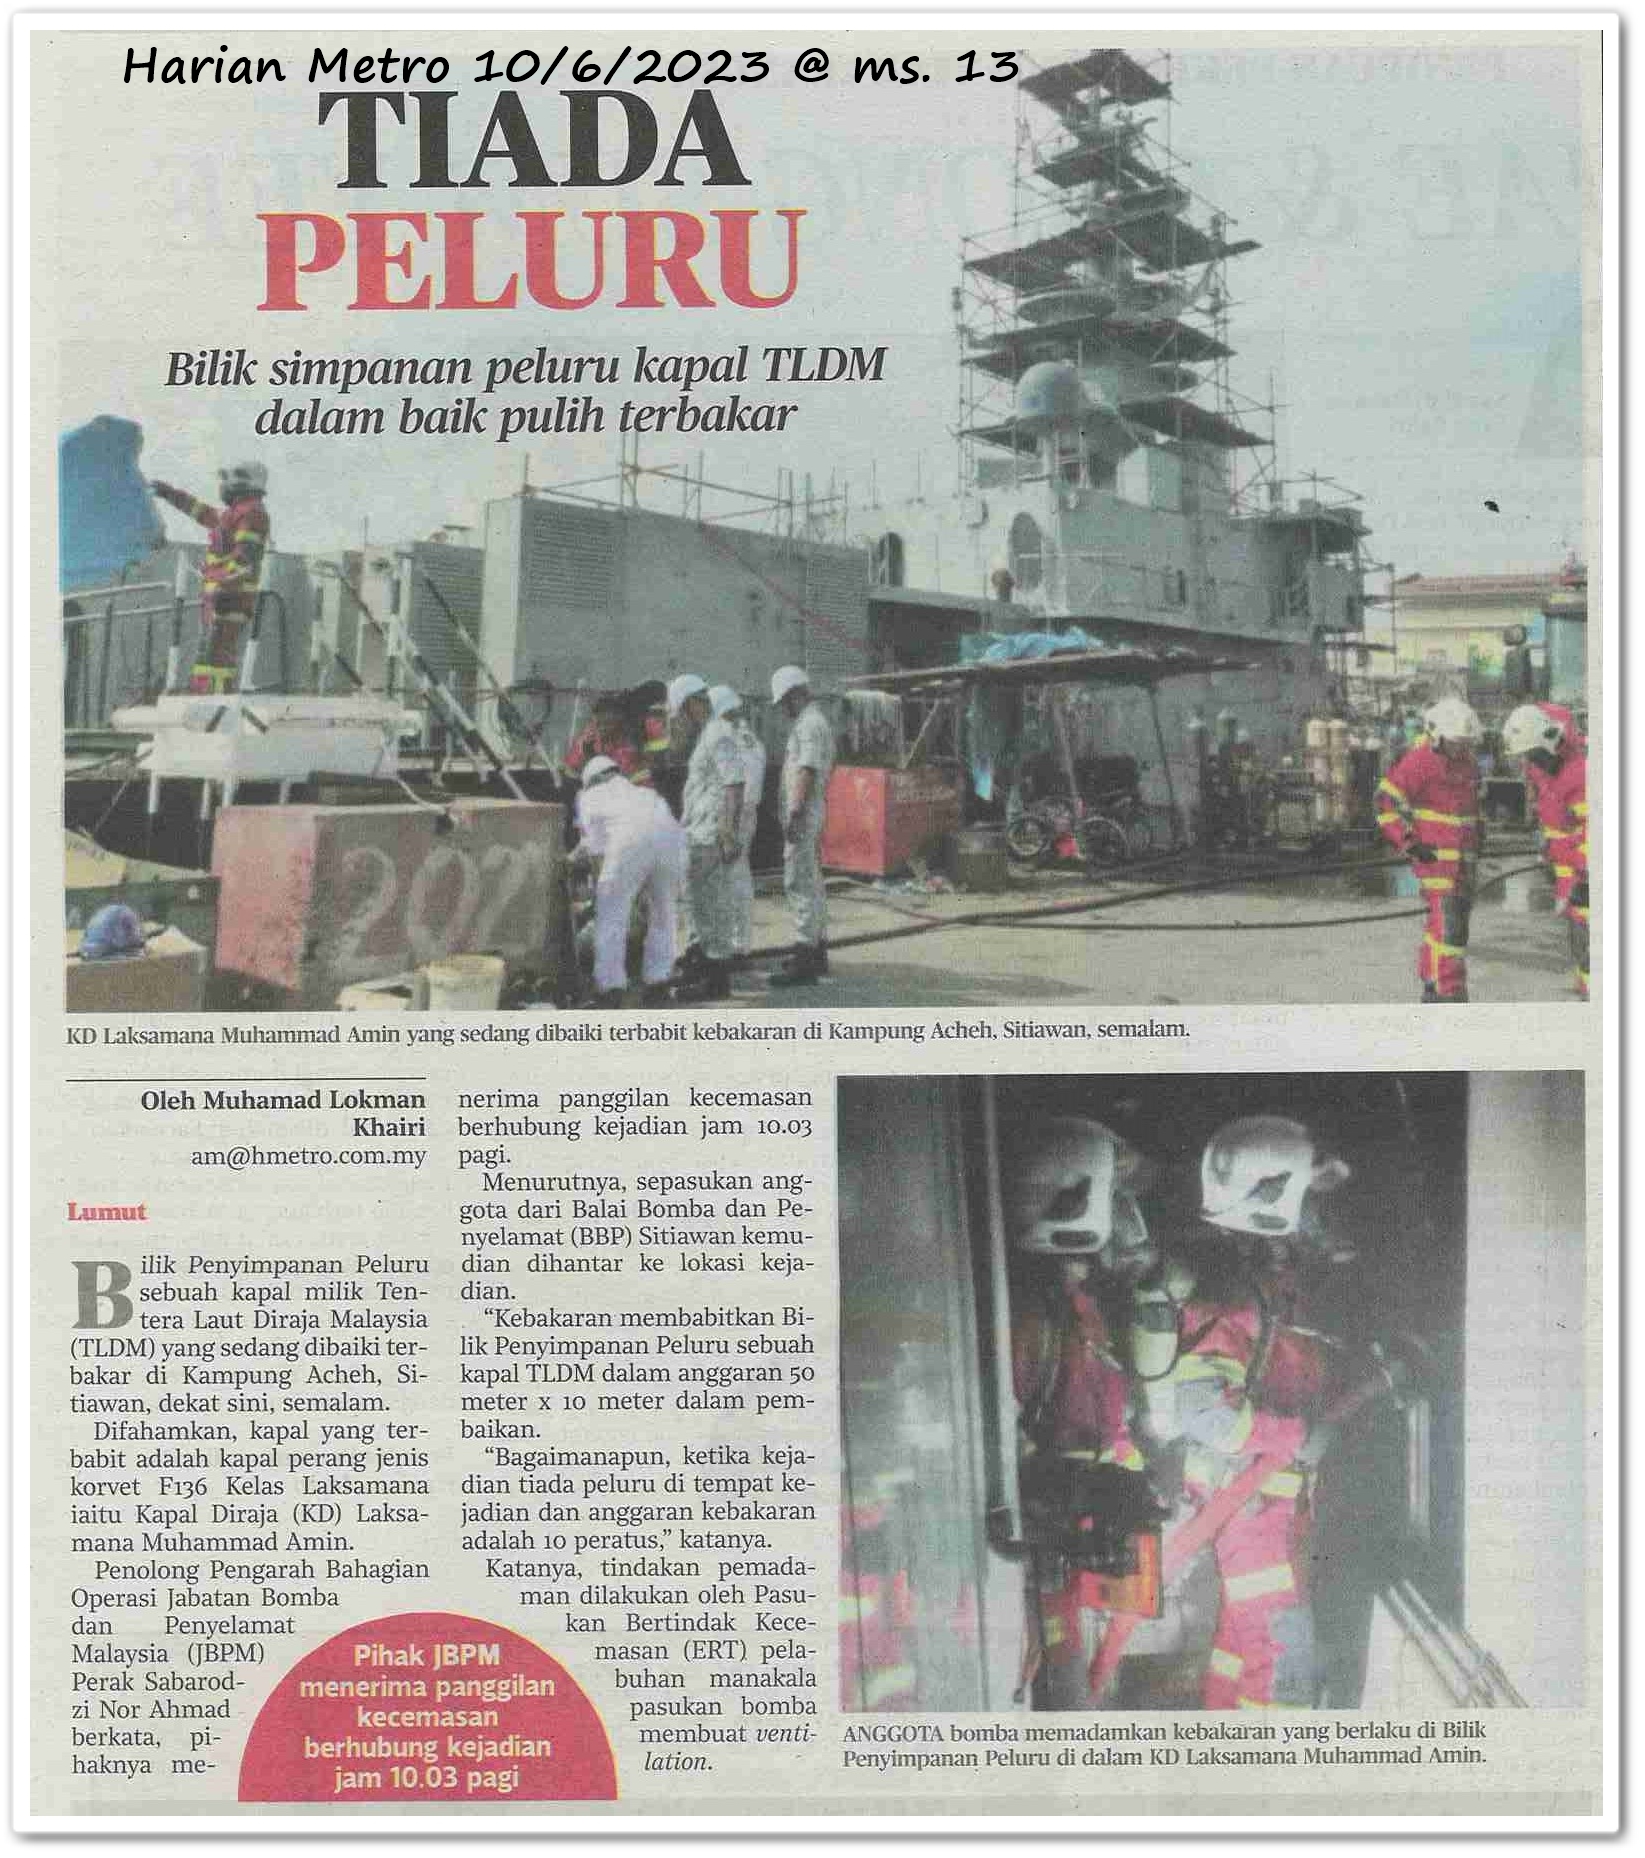 Tiada peluru ; Bilik simpanan peluru kapal TLDM dalam baik pulih terbakar - Keratan akhbar Harian Metro 10 Jun 2023